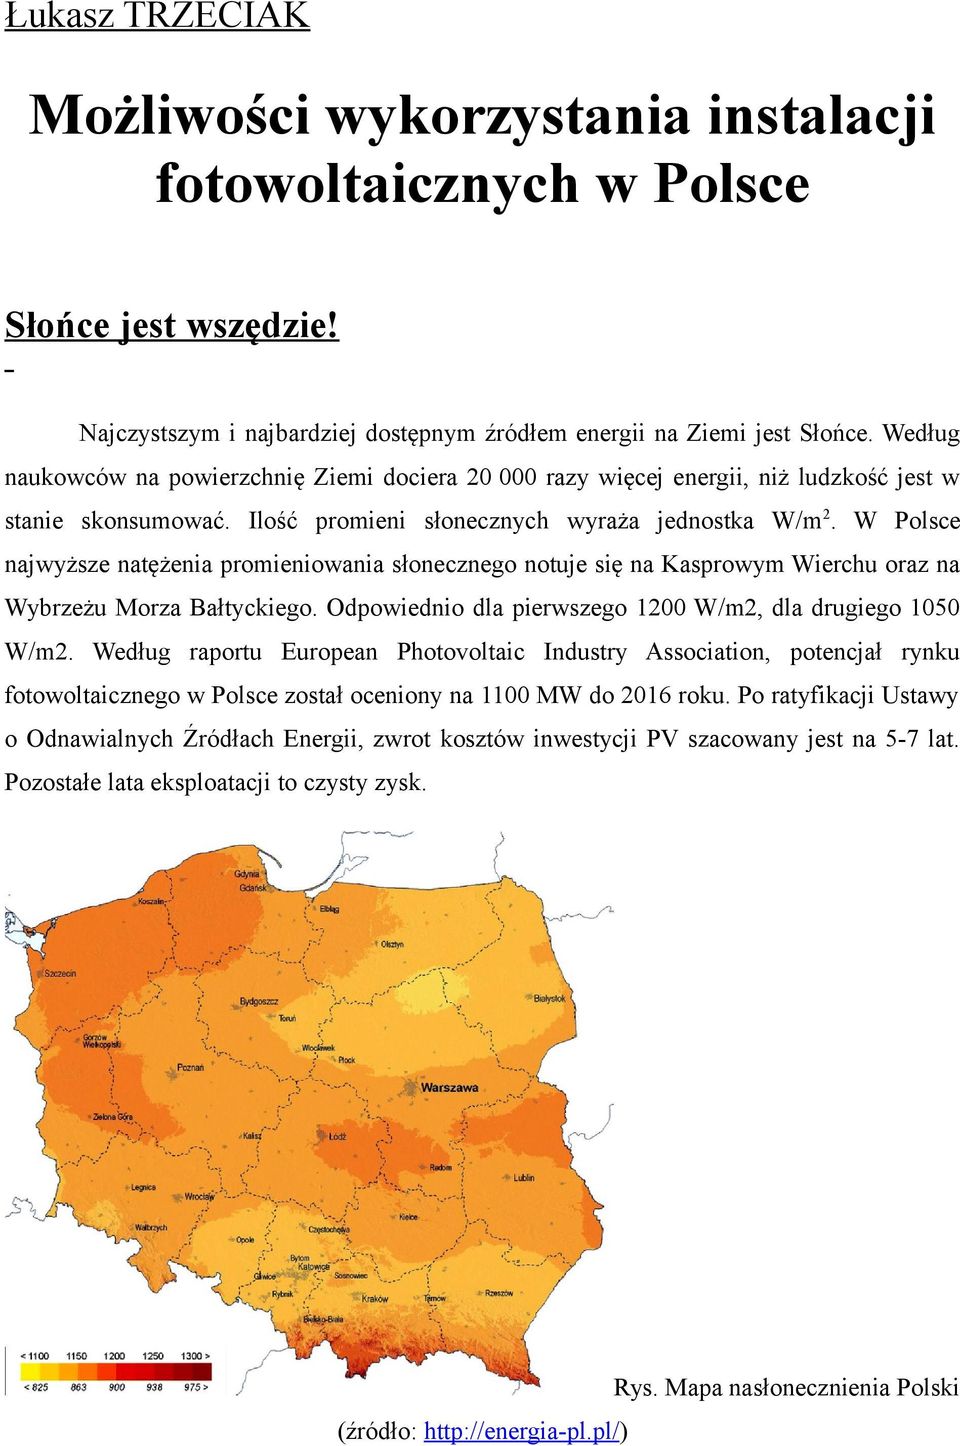 W Polsce najwyższe natężenia promieniowania słonecznego notuje się na Kasprowym Wierchu oraz na Wybrzeżu Morza Bałtyckiego. Odpowiednio dla pierwszego 1200 W/m2, dla drugiego 1050 W/m2.